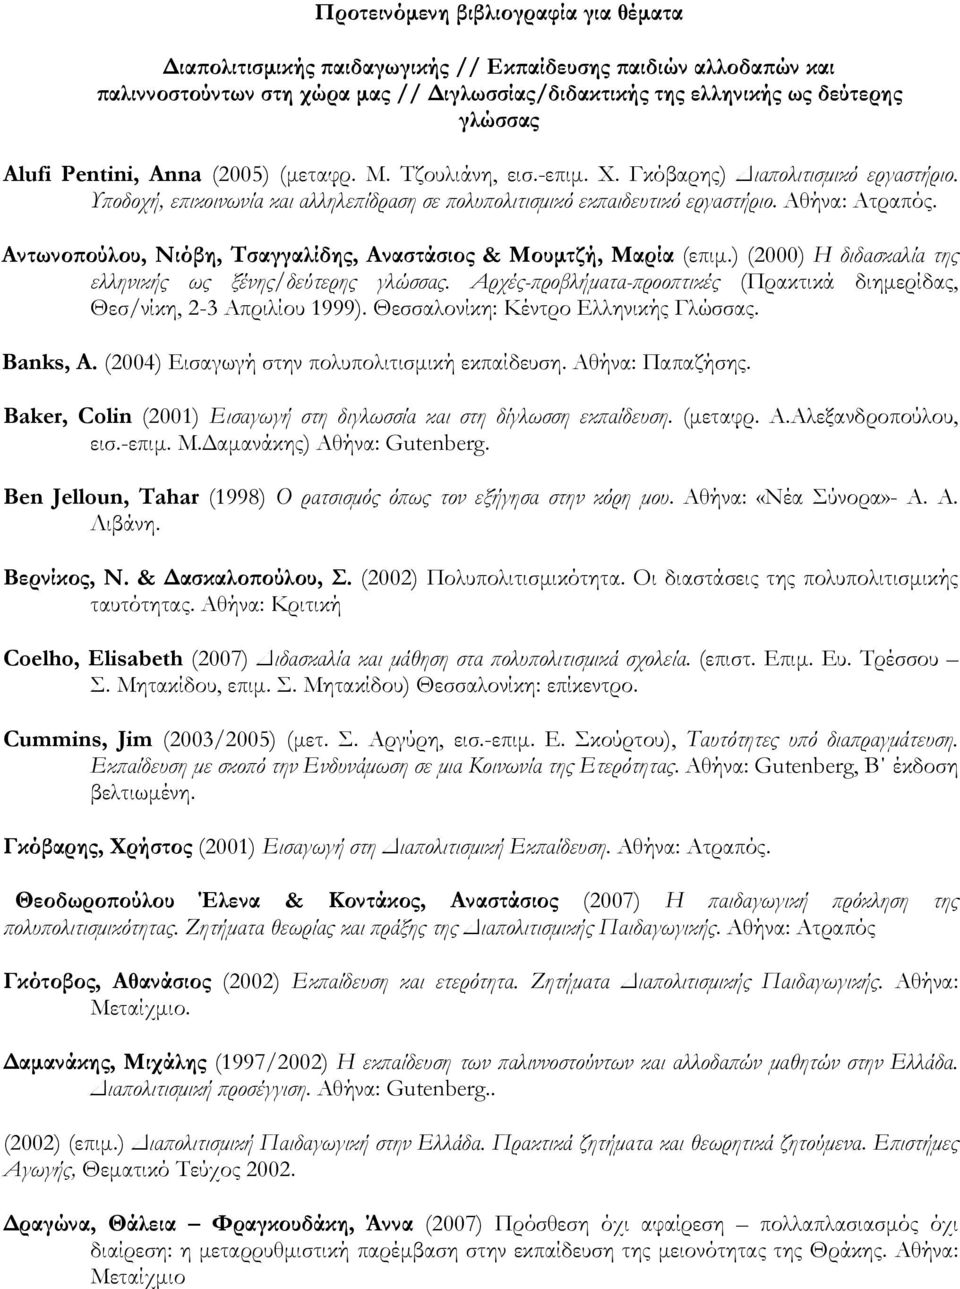 Αντωνοπούλου, Νιόβη, Τσαγγαλίδης, Αναστάσιος & Μουμτζή, Μαρία (επιμ.) (2000) Η διδασκαλία της ελληνικής ως ξένης/δεύτερης γλώσσας.